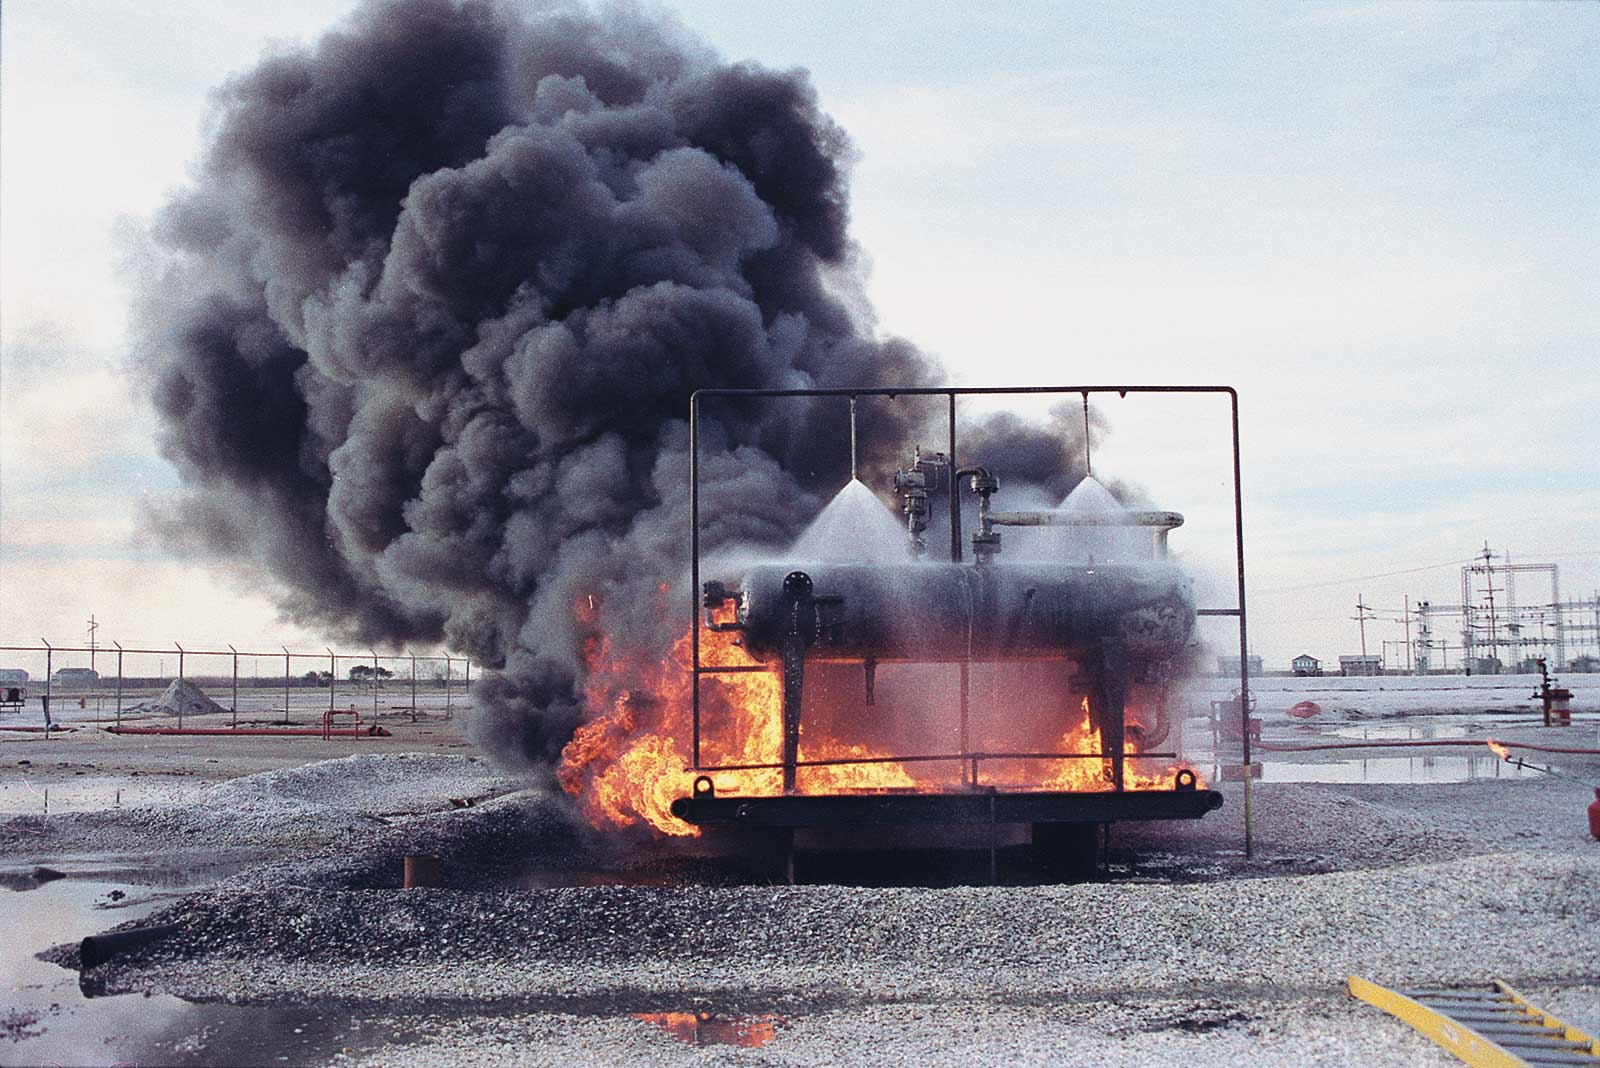 化工罐防火试验:安装在水管上的两个螺旋消防喷嘴向被火焰包围的小型化工罐喷洒大量的水gydF4y2Ba